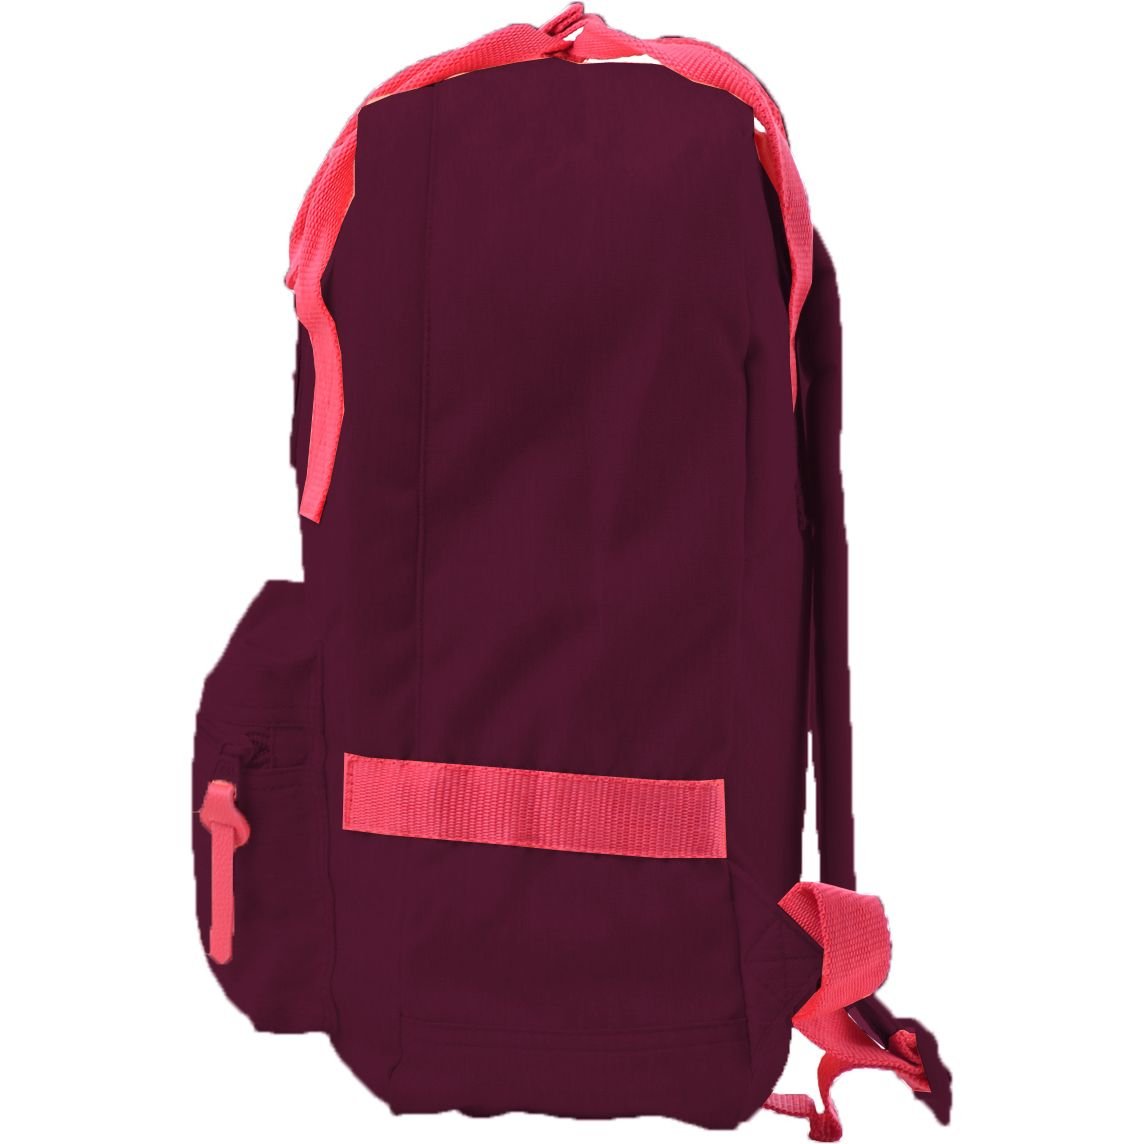 Рюкзак для підлітків Yes ST-24 Tawny Port, бордовый (555585) - фото 2